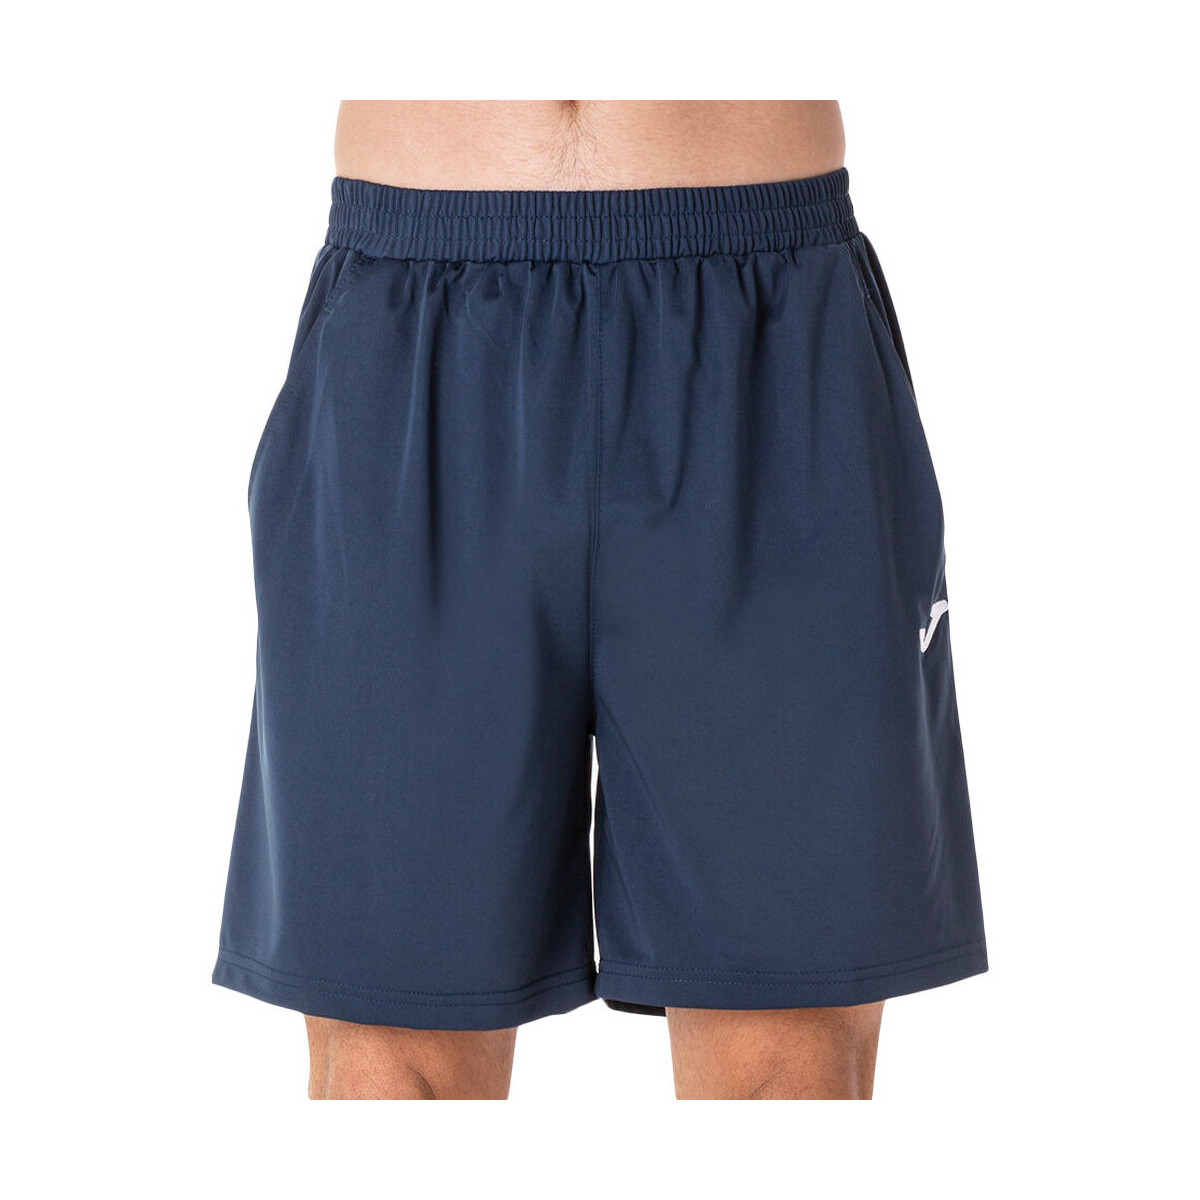 Abbigliamento Uomo Shorts / Bermuda Joma 101114.331 Blu